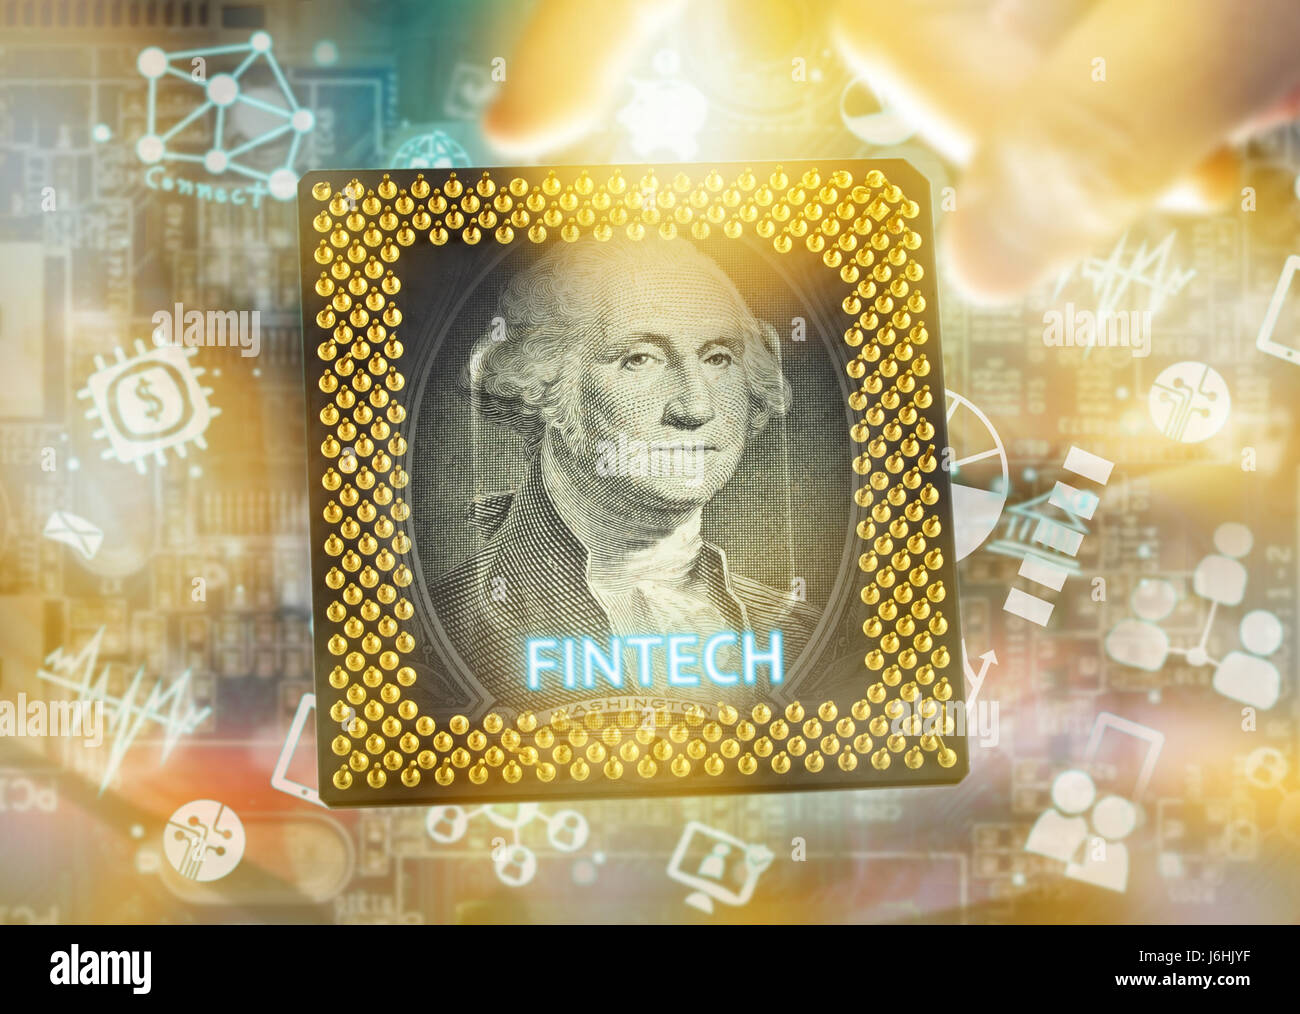 La technologie de l'Internet financier Investissement Fintech Concept. US dollar note , ordinateur , cpu , la technologie et les finances avec l'icône électronique abstraite Banque D'Images